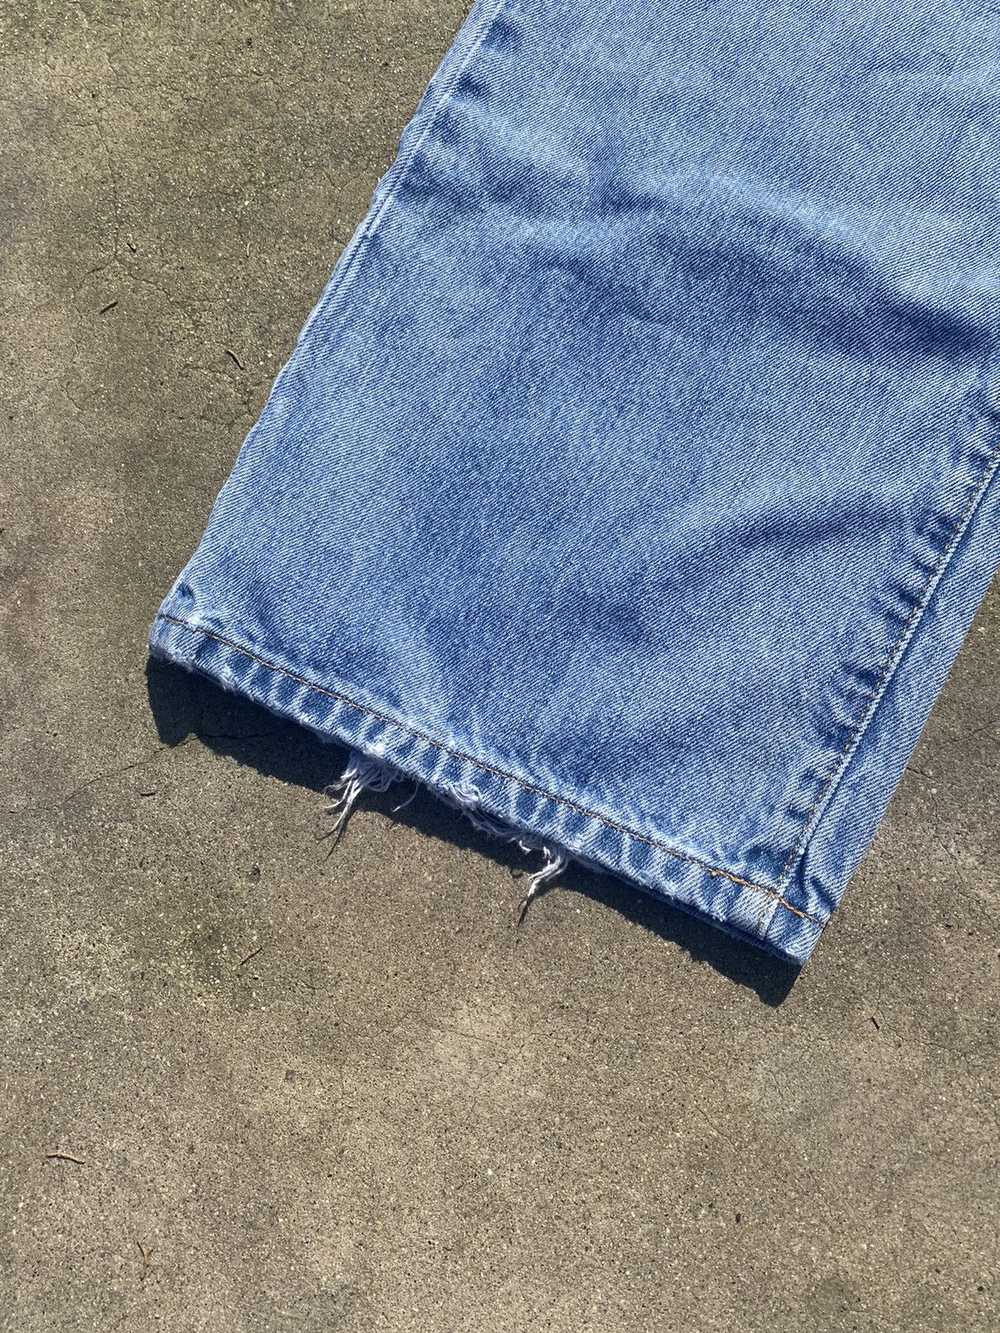 Tommy Hilfiger × Tommy Jeans × Vintage Vintage To… - image 3